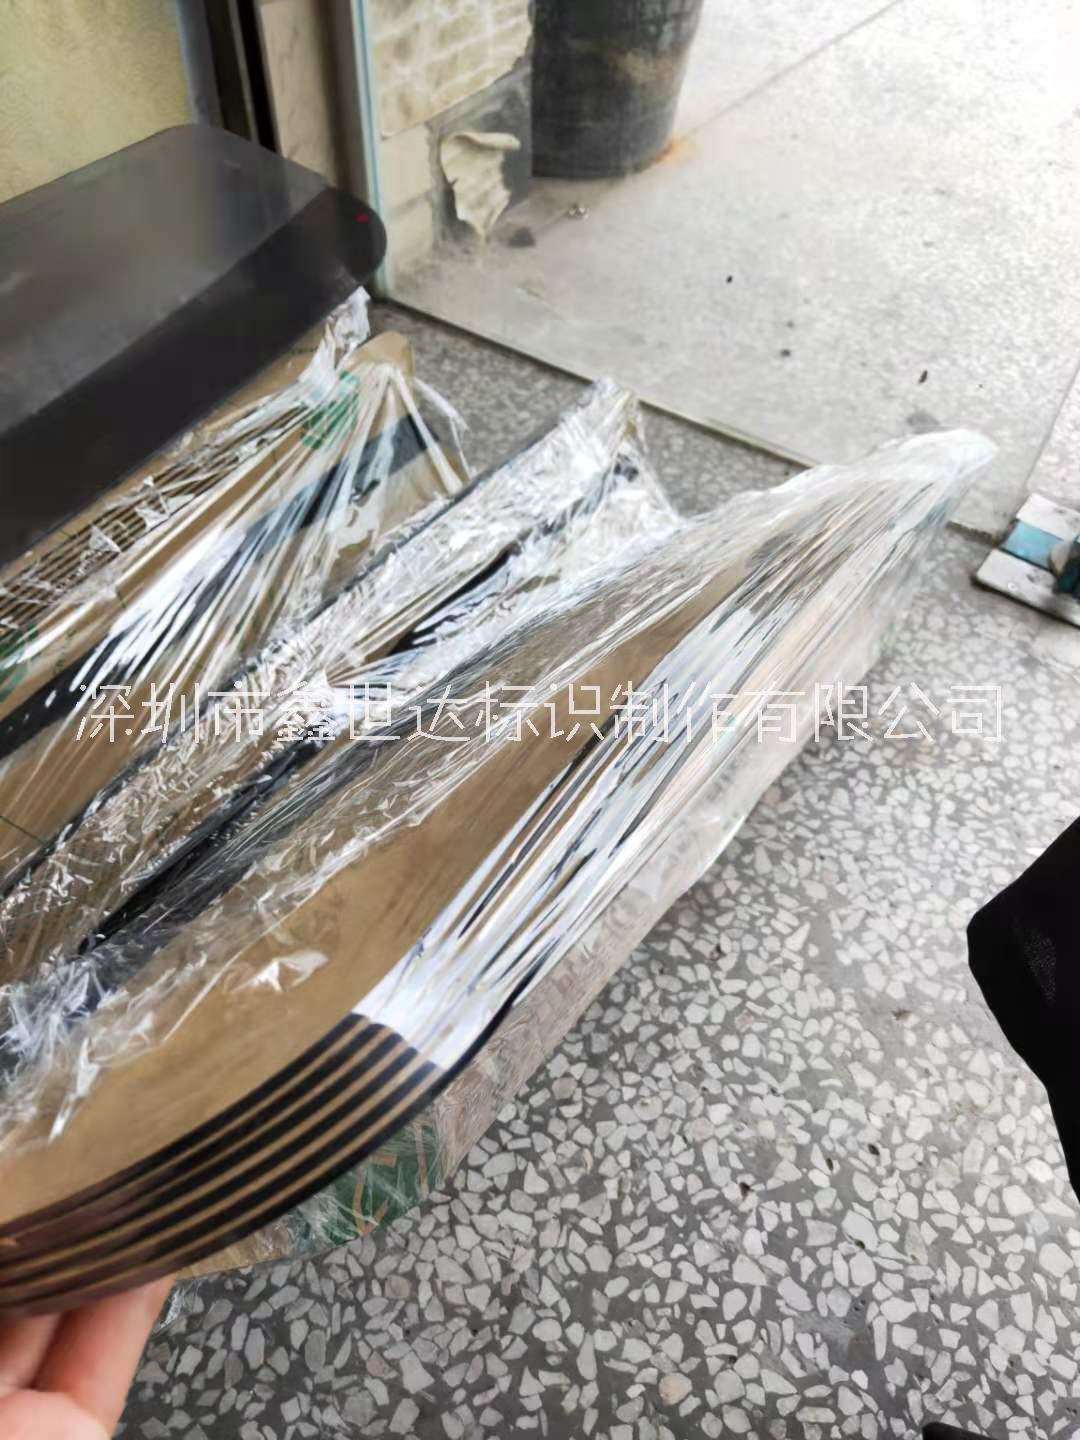 深圳龙华亚克力设备罩 有机玻璃热弯罩子 茶色压克力防护罩挡板图片